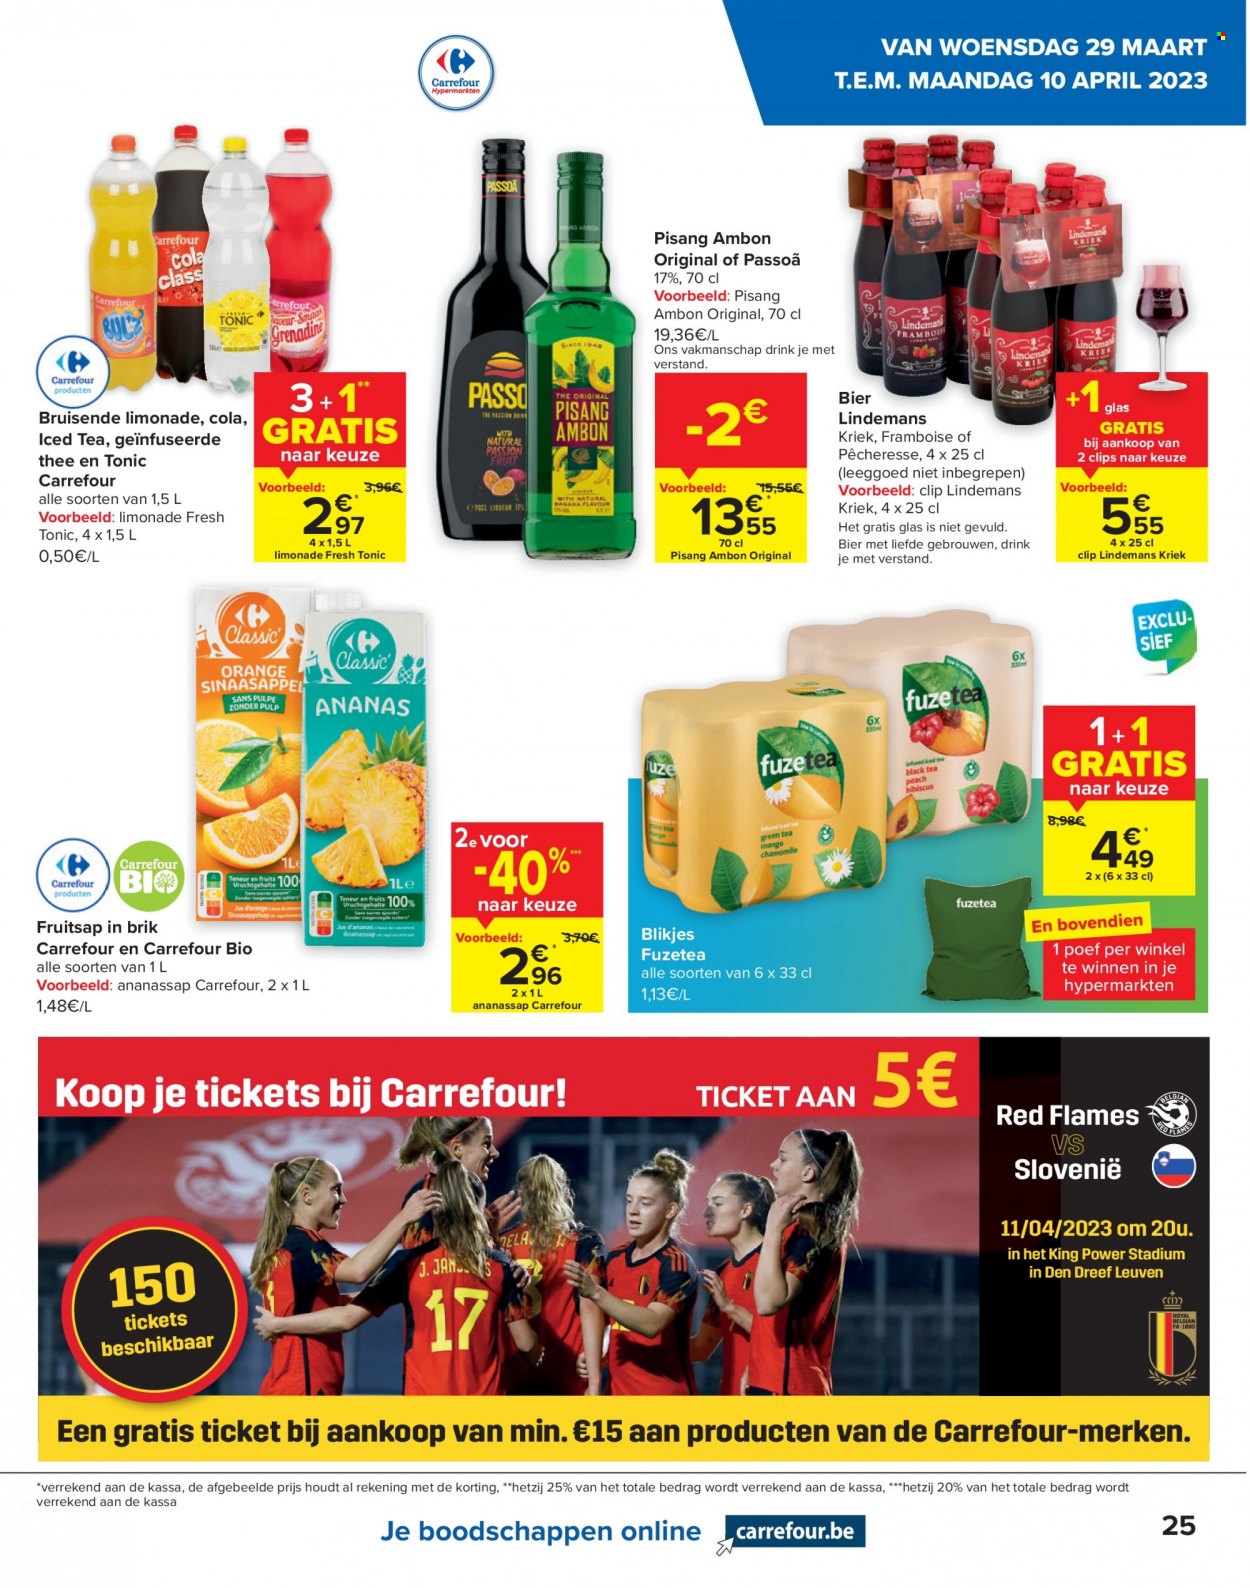 thumbnail - Carrefour hypermarkt-aanbieding - 29/03/2023 - 10/04/2023 -  producten in de aanbieding - bier, thee, fuzetea, Pisang Ambon. Pagina 25.